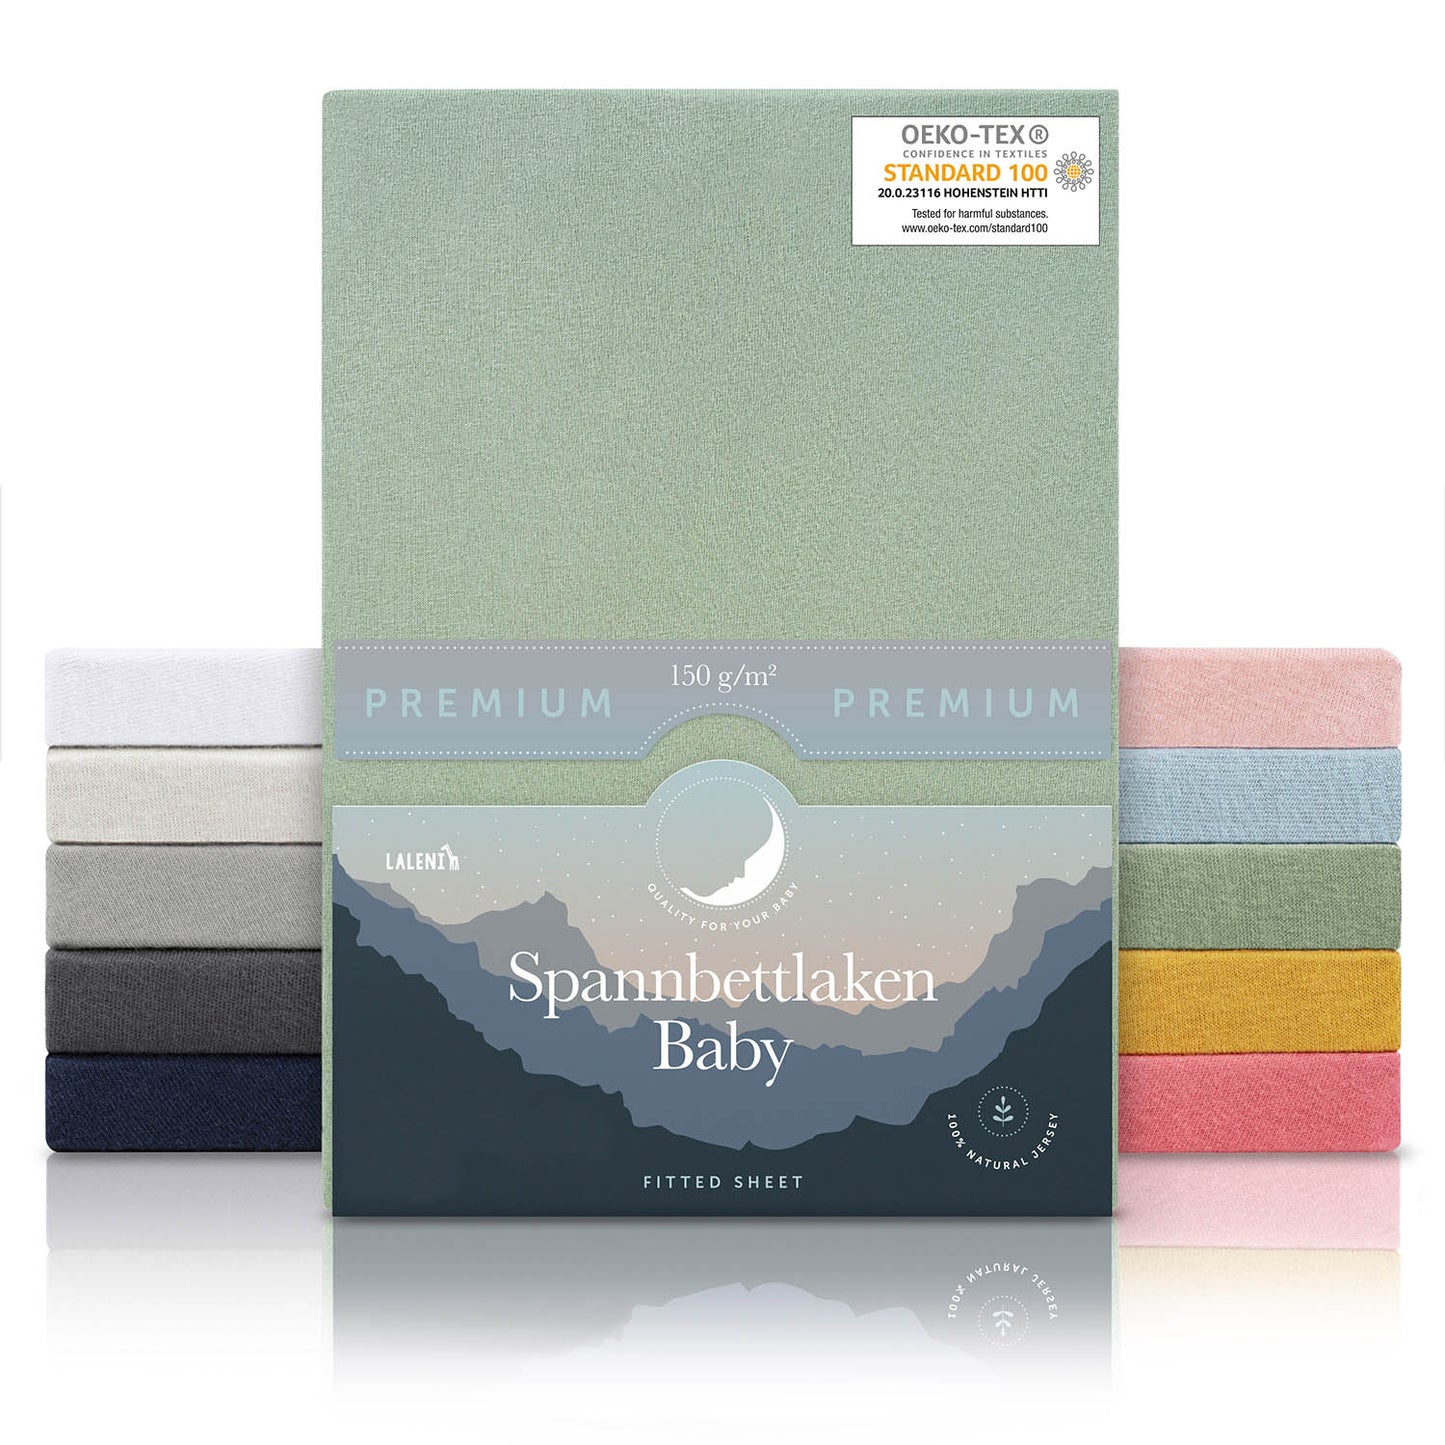 Verpackung von grünen Baby-Spannbettlaken mit OEKO-TEX Siegel und Angabe von 150 g/m² Qualität in verschiedenen Farben präsentiert